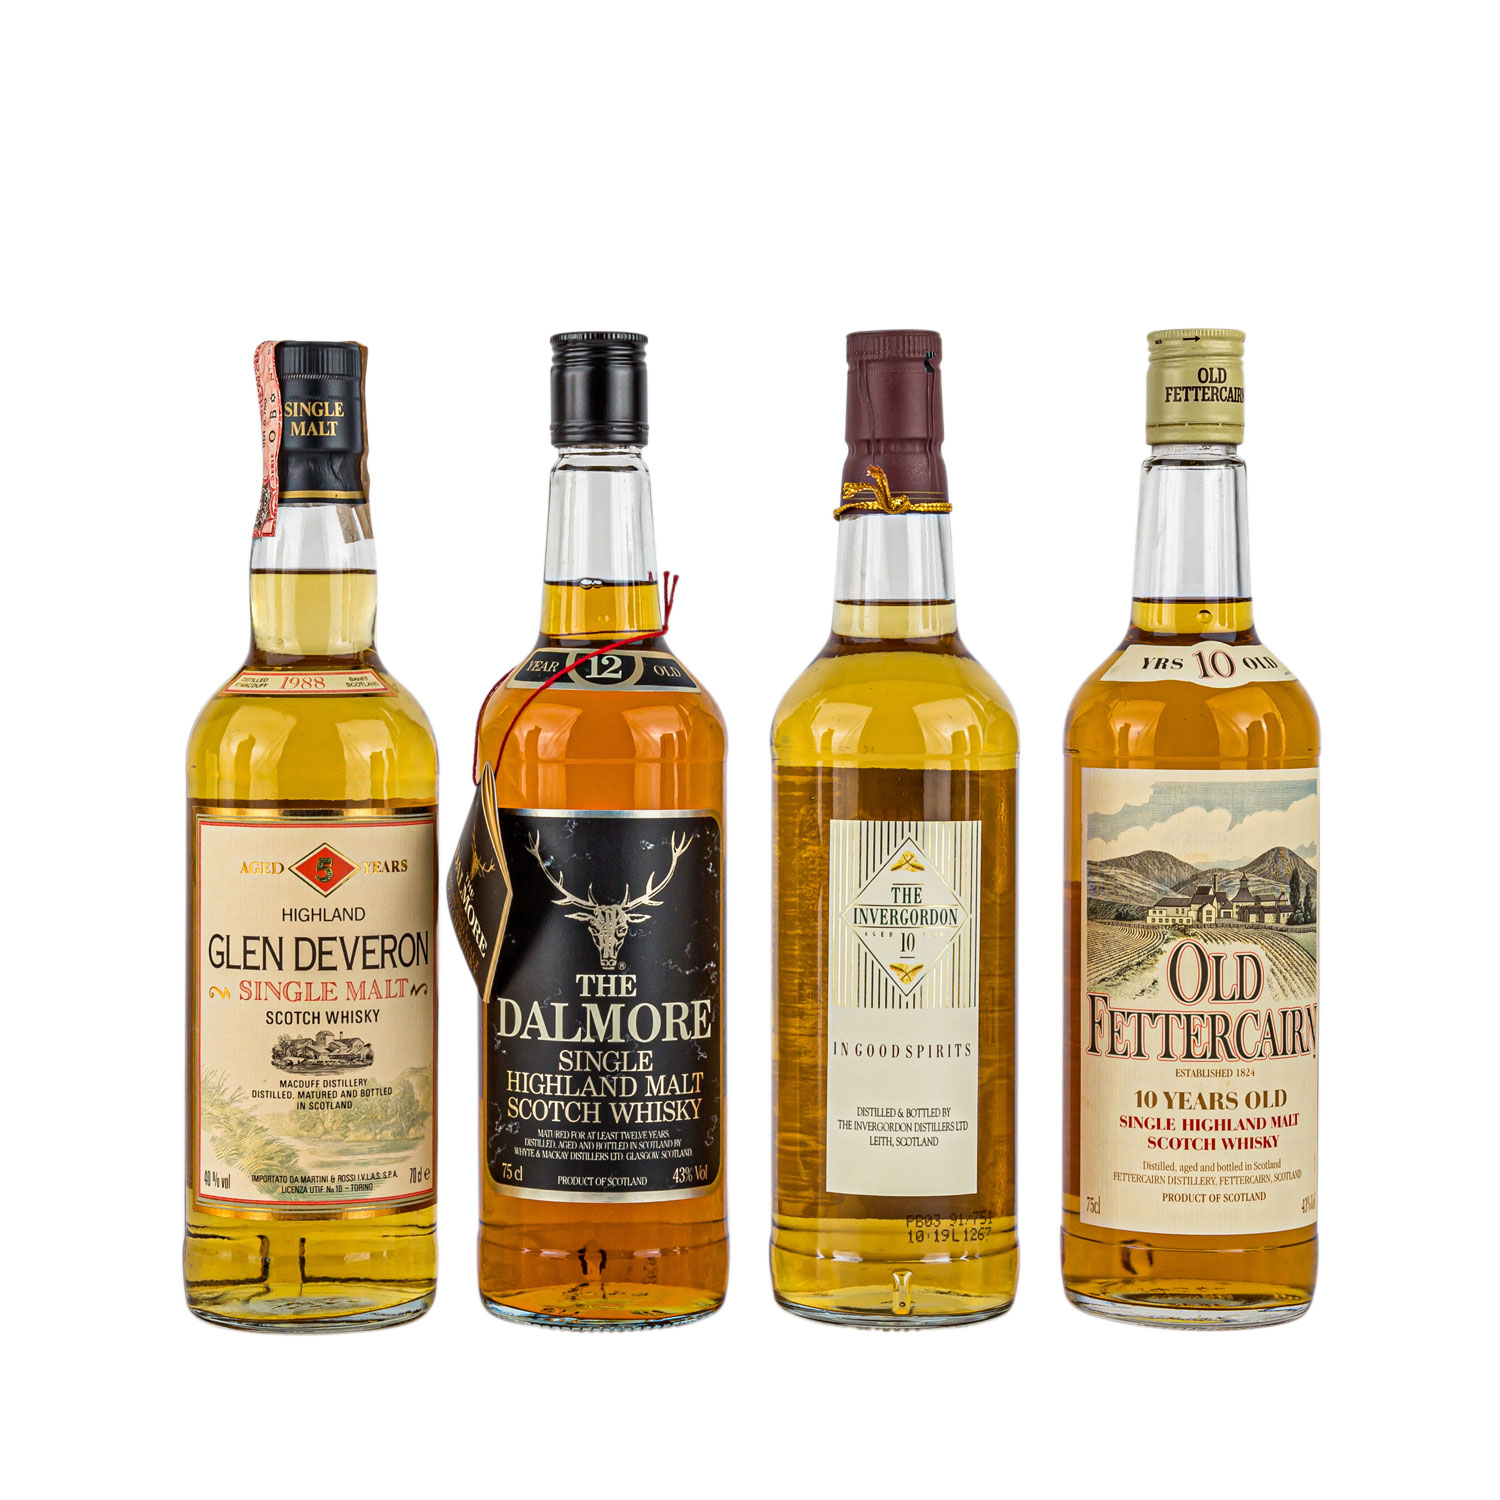 4 Flaschen Single Malt Scotch Whisky GLEN DEVERON 5 years / OLD FETTERCAIRN 10 years / INVERGORDON - Image 2 of 2